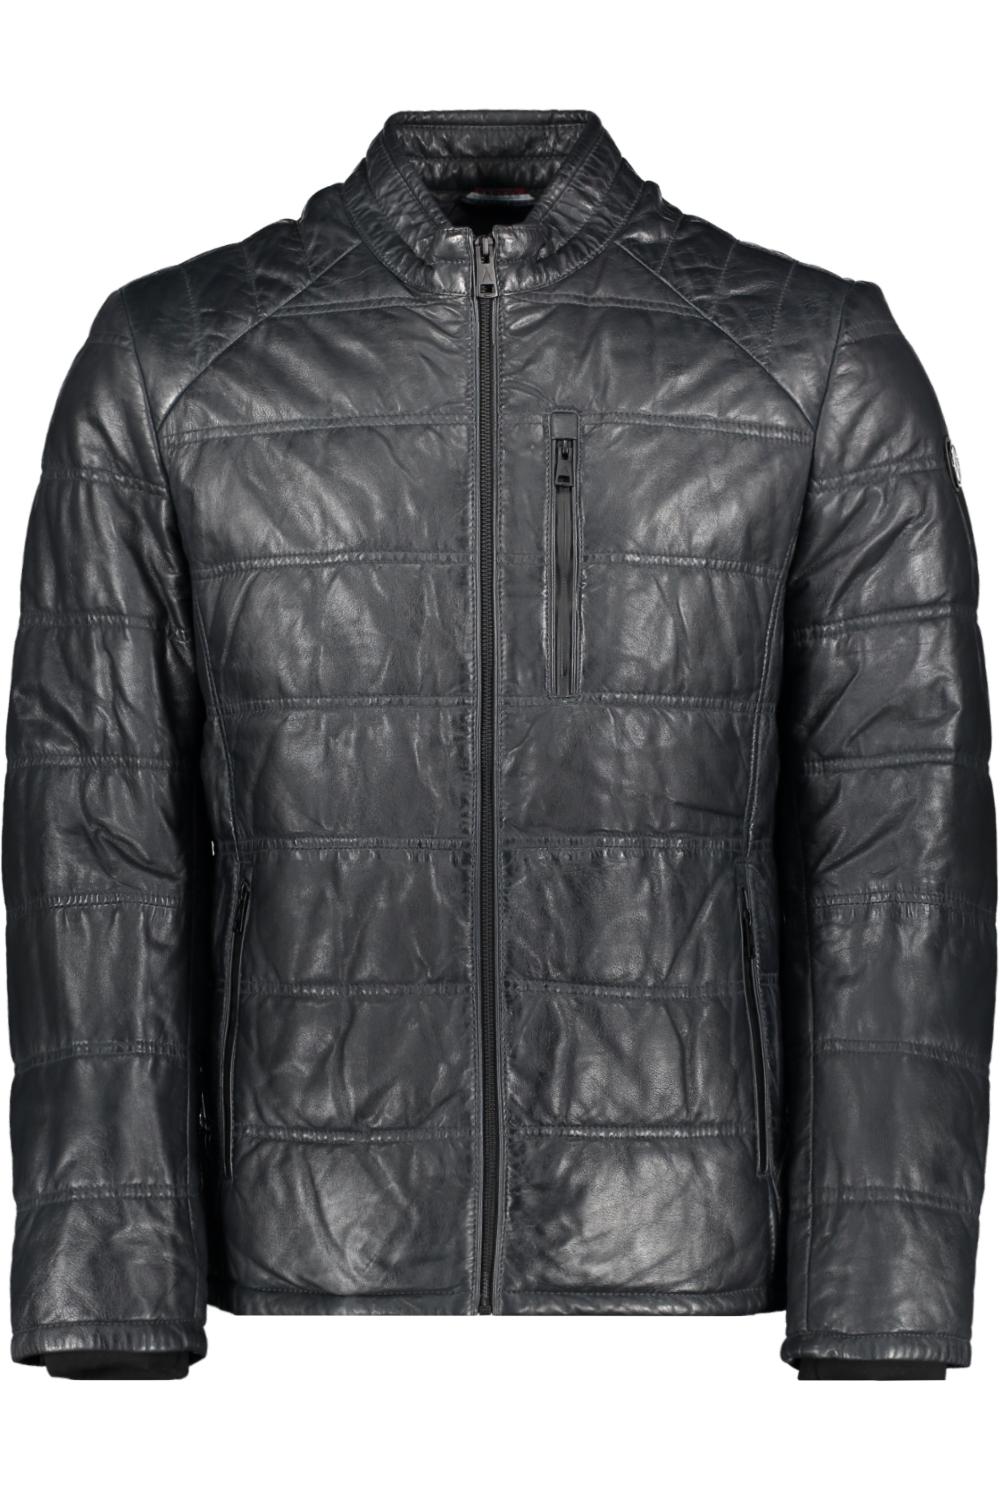 Leven van toxiciteit Ik heb een contract gemaakt leather jacket 52302 donders leren jas blue night